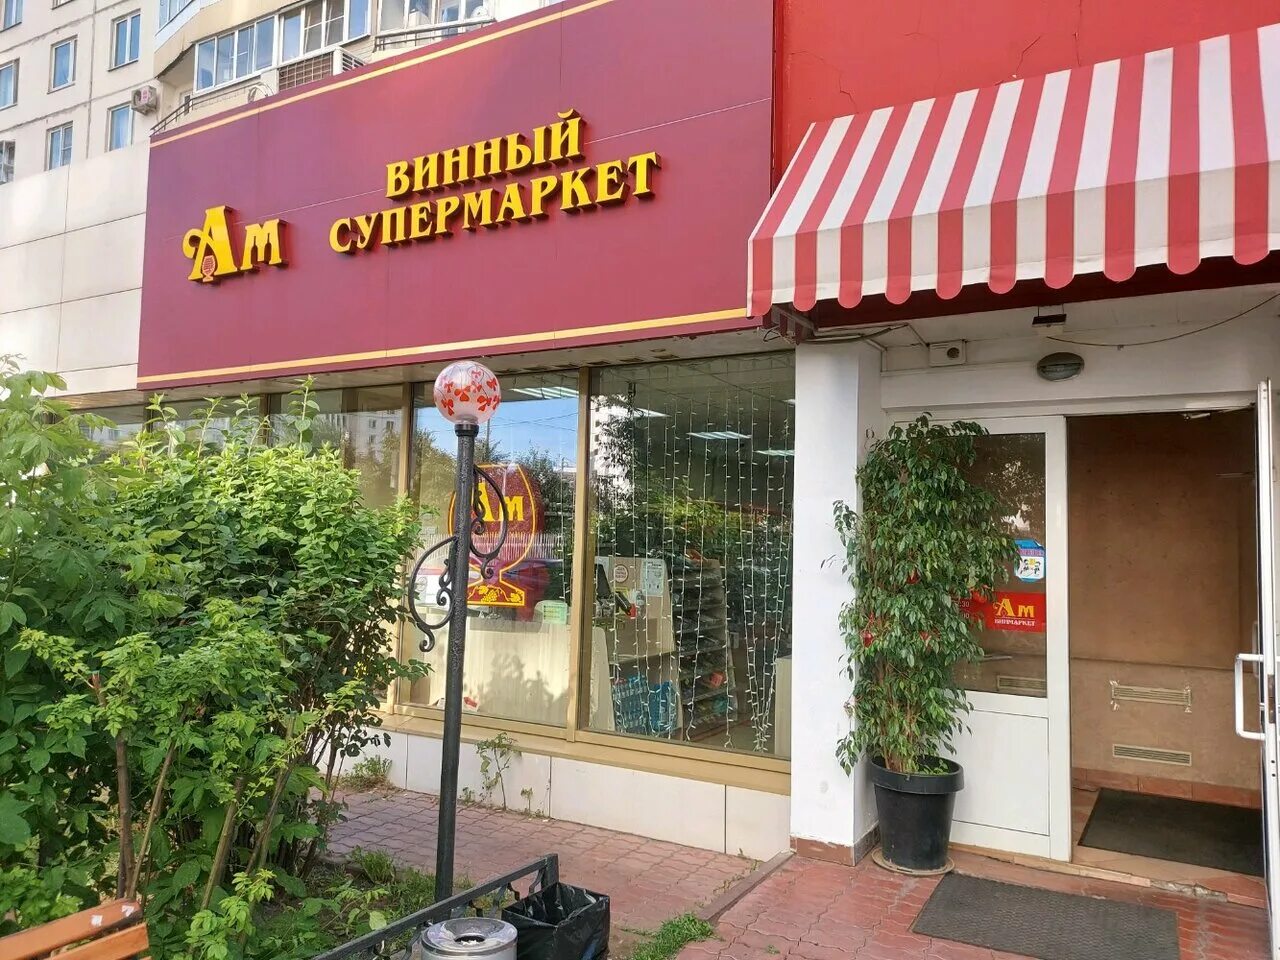 Ароматный м. Ароматный мир магазин. Ароматный мир фото магазинов. Ароматный мир магазины в Москве. Ароматный мир вывеска.